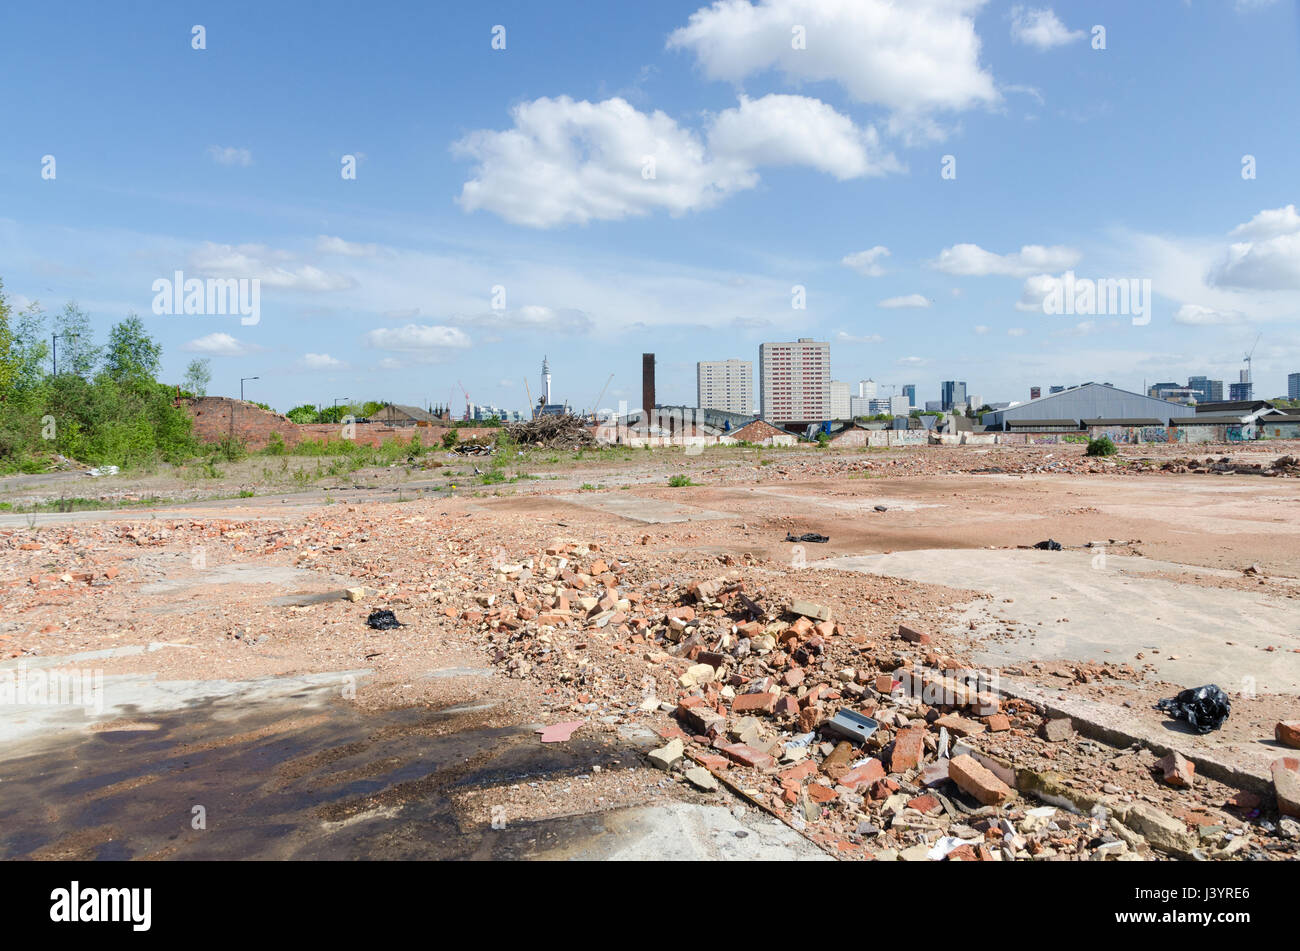 Grande zone de terre défrichée en attente de développement, à la suite de la démolition d'une ancienne usine Banque D'Images